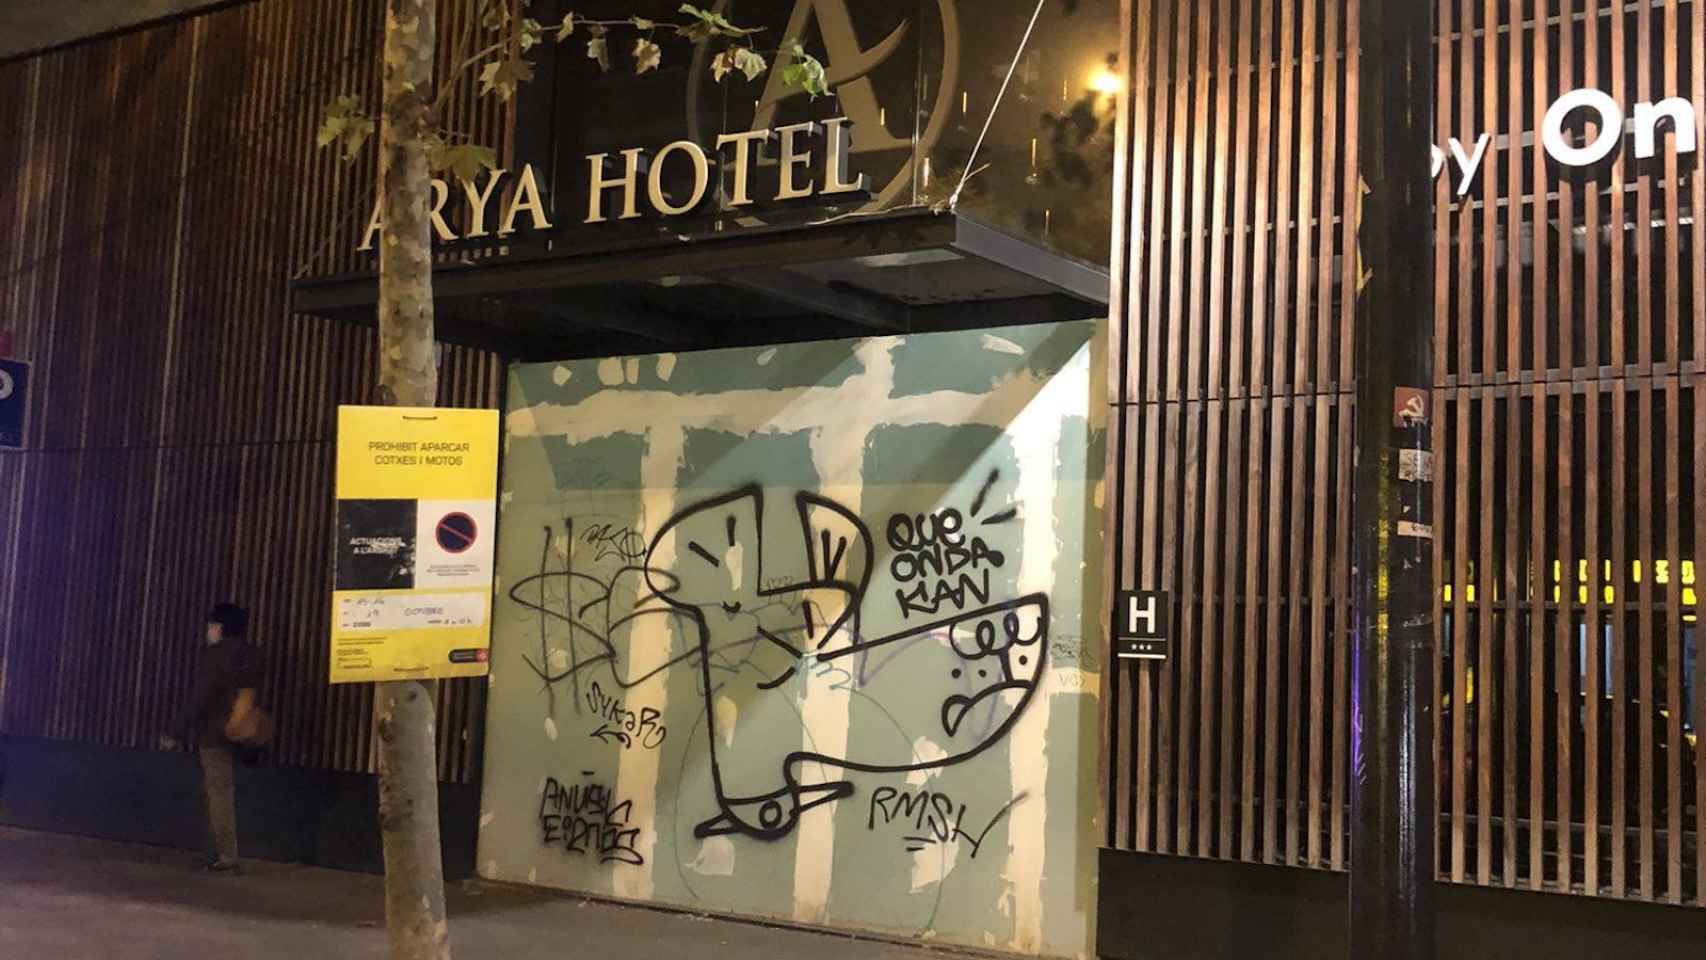 El Arya Hotel de Barcelona, que ha tapiado su entrada ante los okupas en la ciudad, presenta un estado de degradación lamentable / TWITTER - Barcelona es queixa